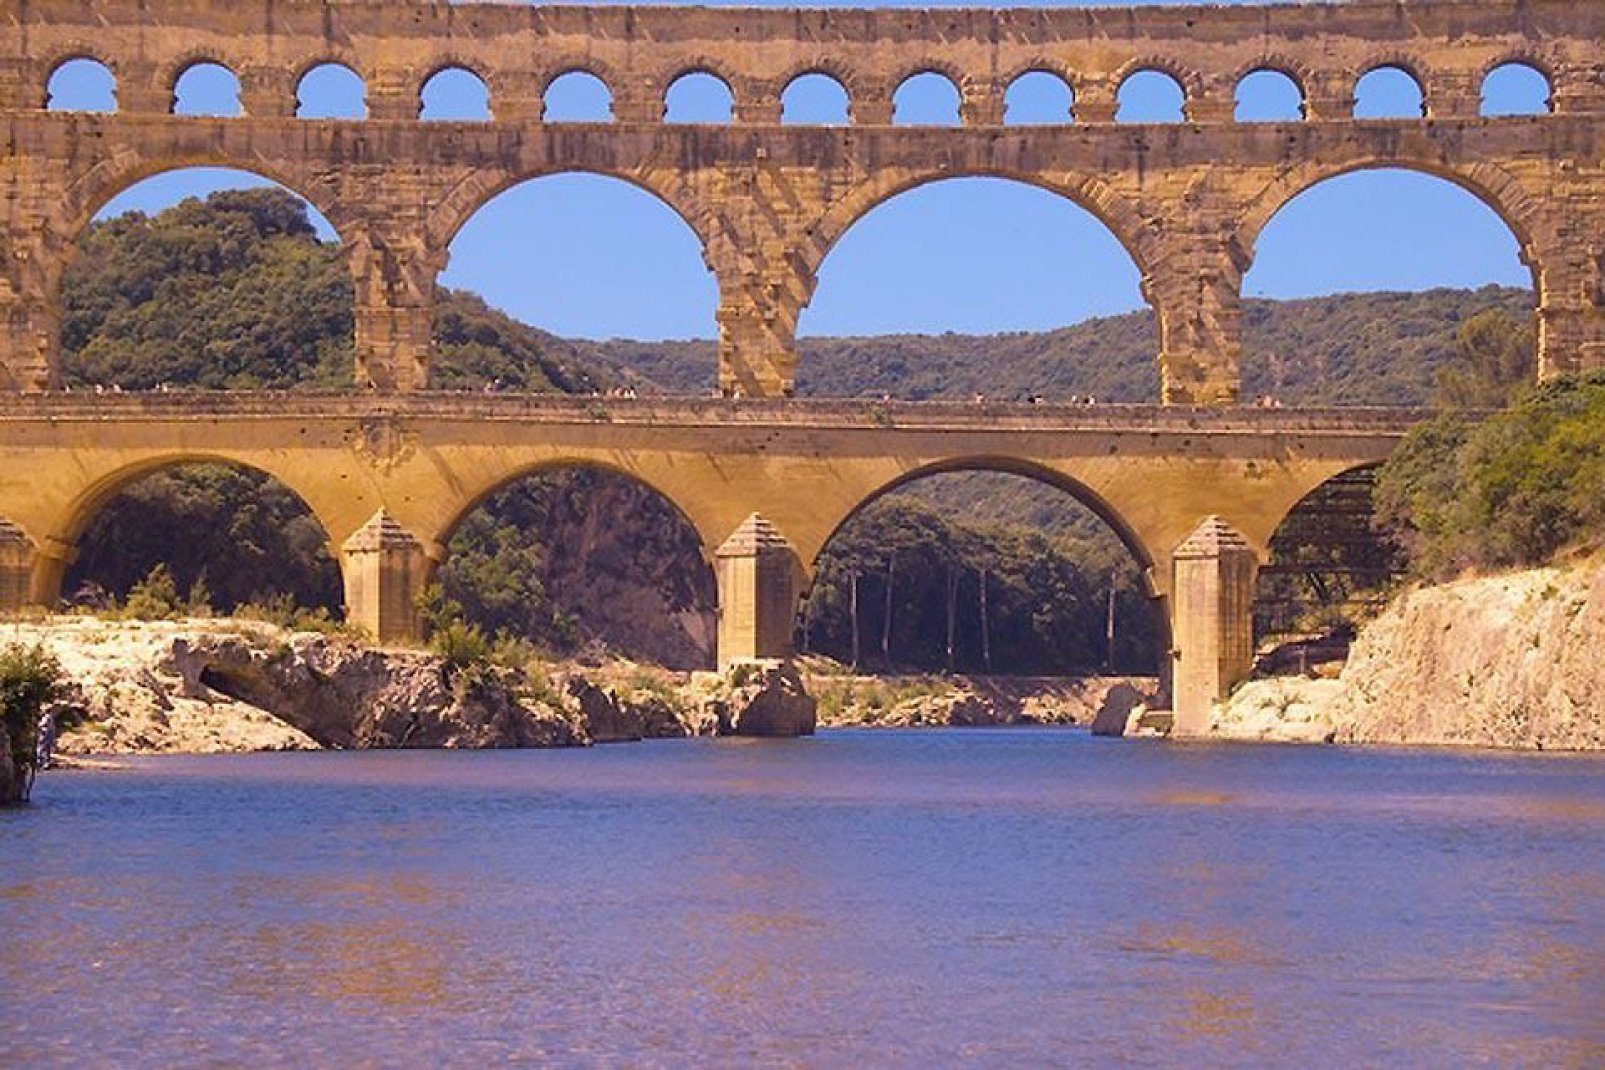 Le pont-aqueduc date de l'époque romaine. Il est doté de trois niveaux, dont le plus élevé culmine à 7,40 m.